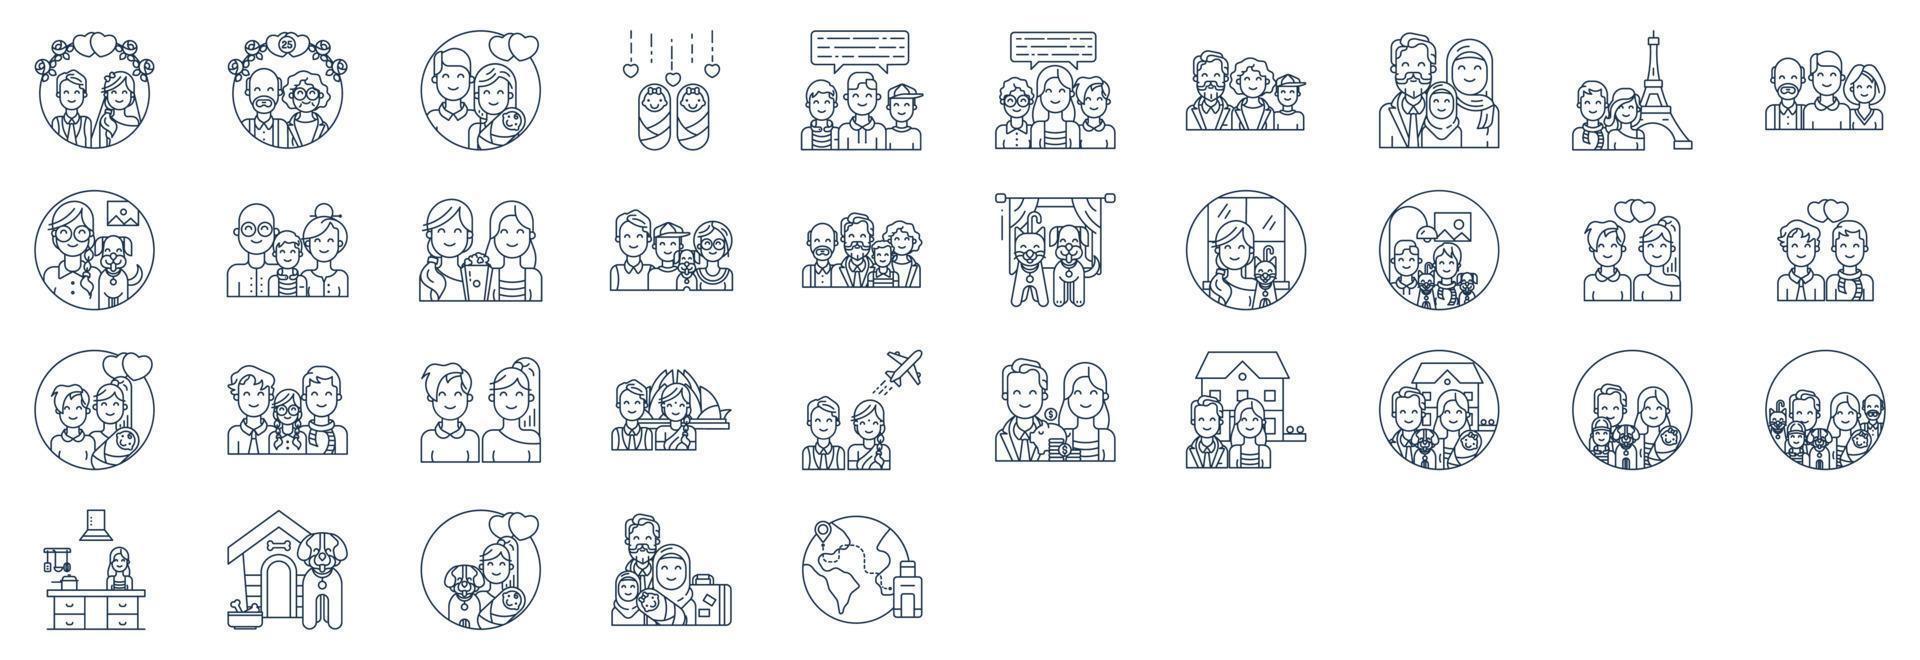 coleção de ícones relacionados a membros da família, incluindo ícones como pai, mãe, tio, tia, filho, criança e muito mais. ilustrações vetoriais, conjunto perfeito de pixels vetor